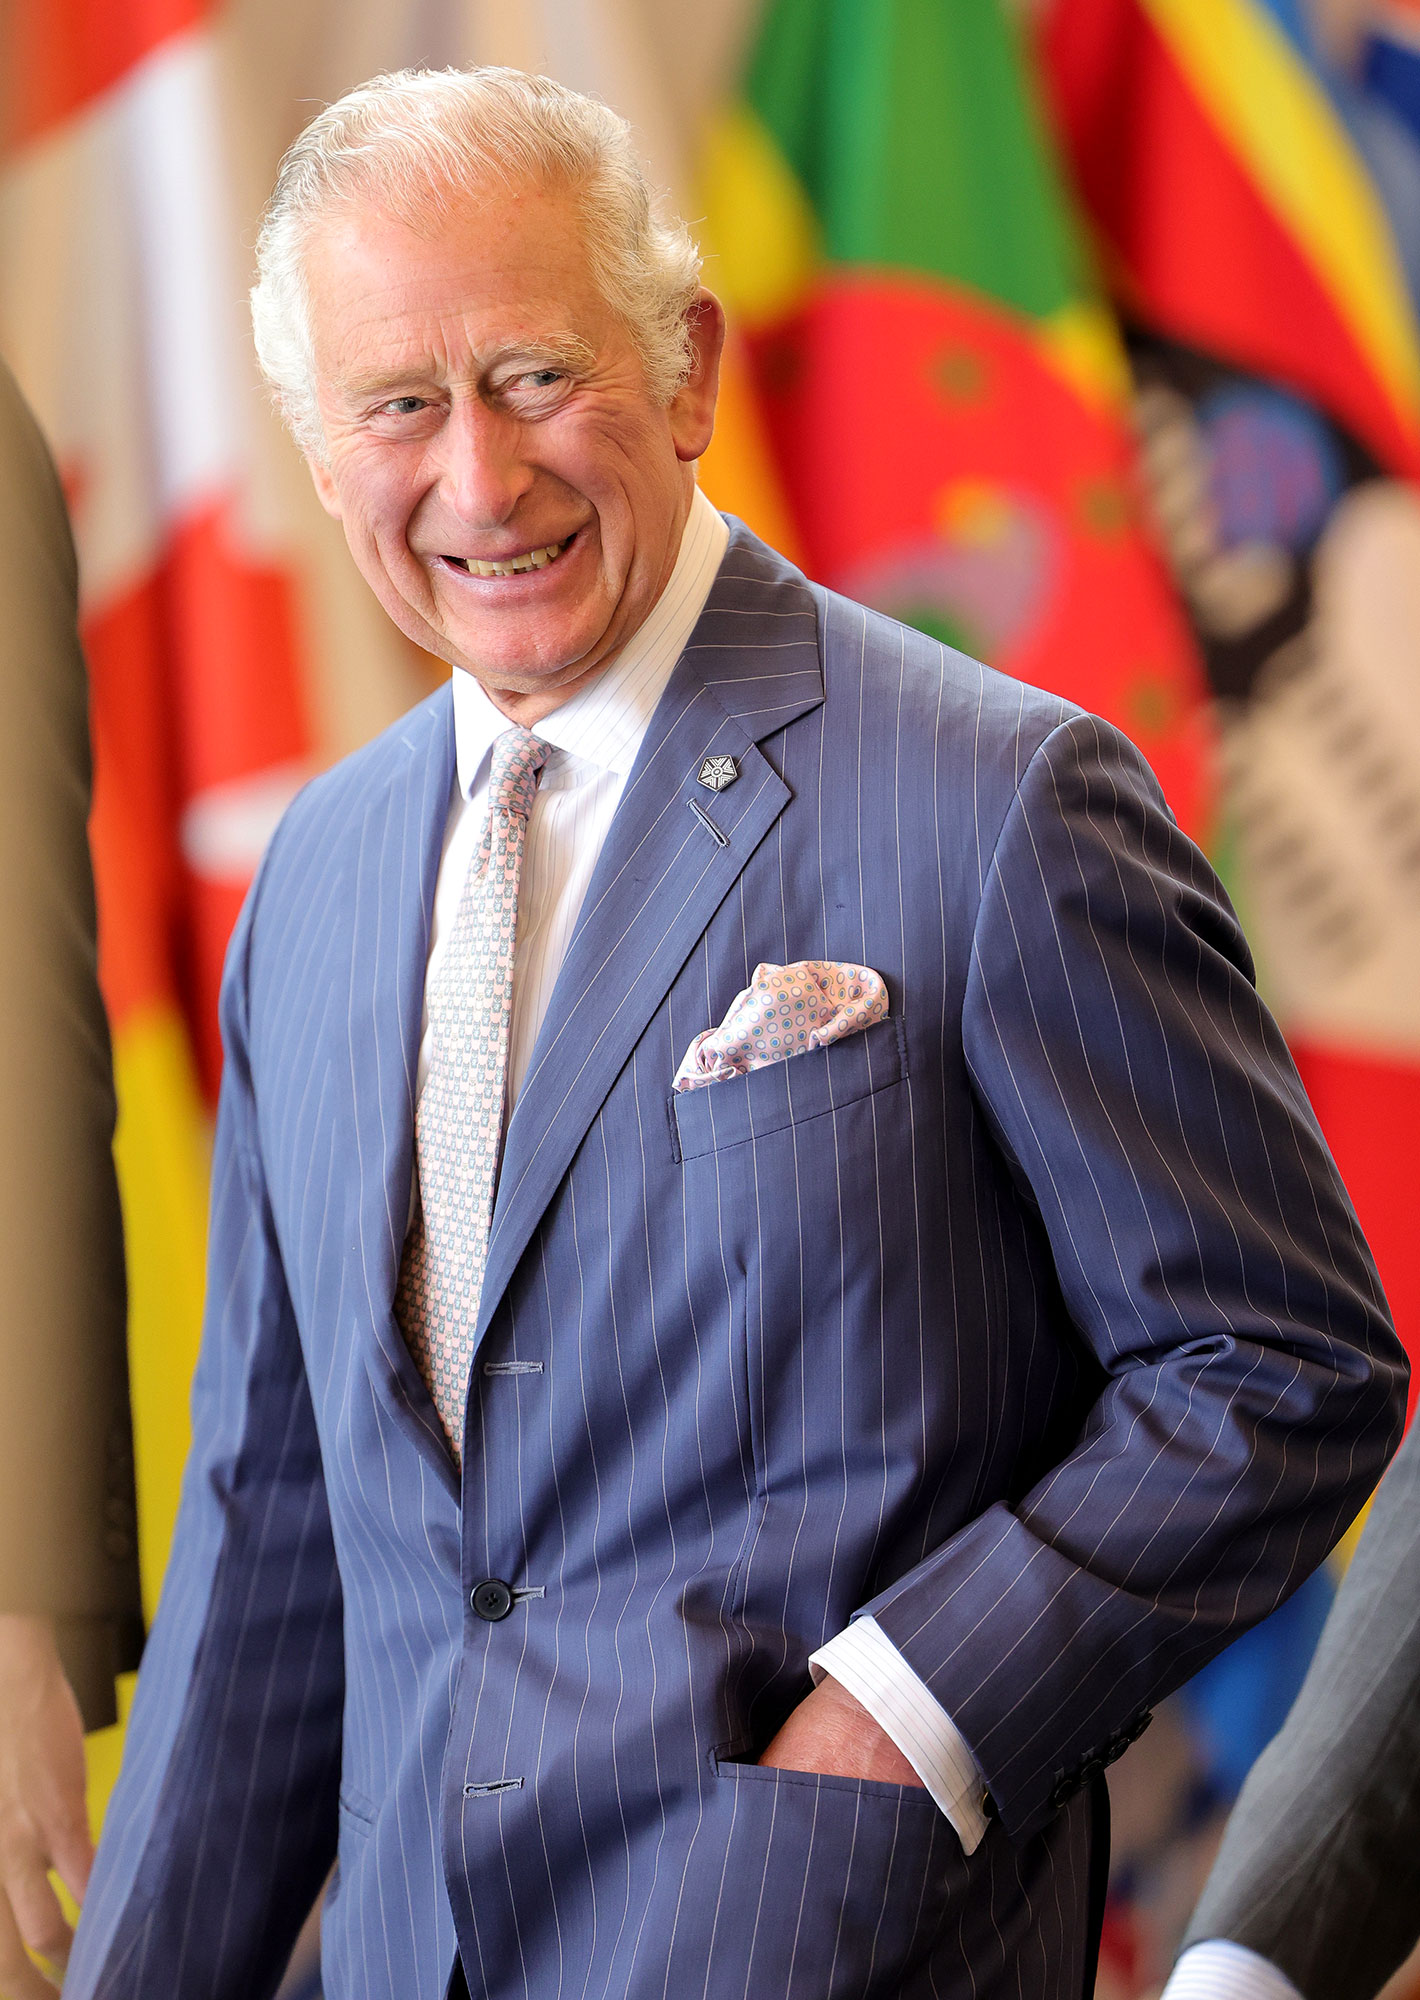 King Charles III Royal Family Nicknames